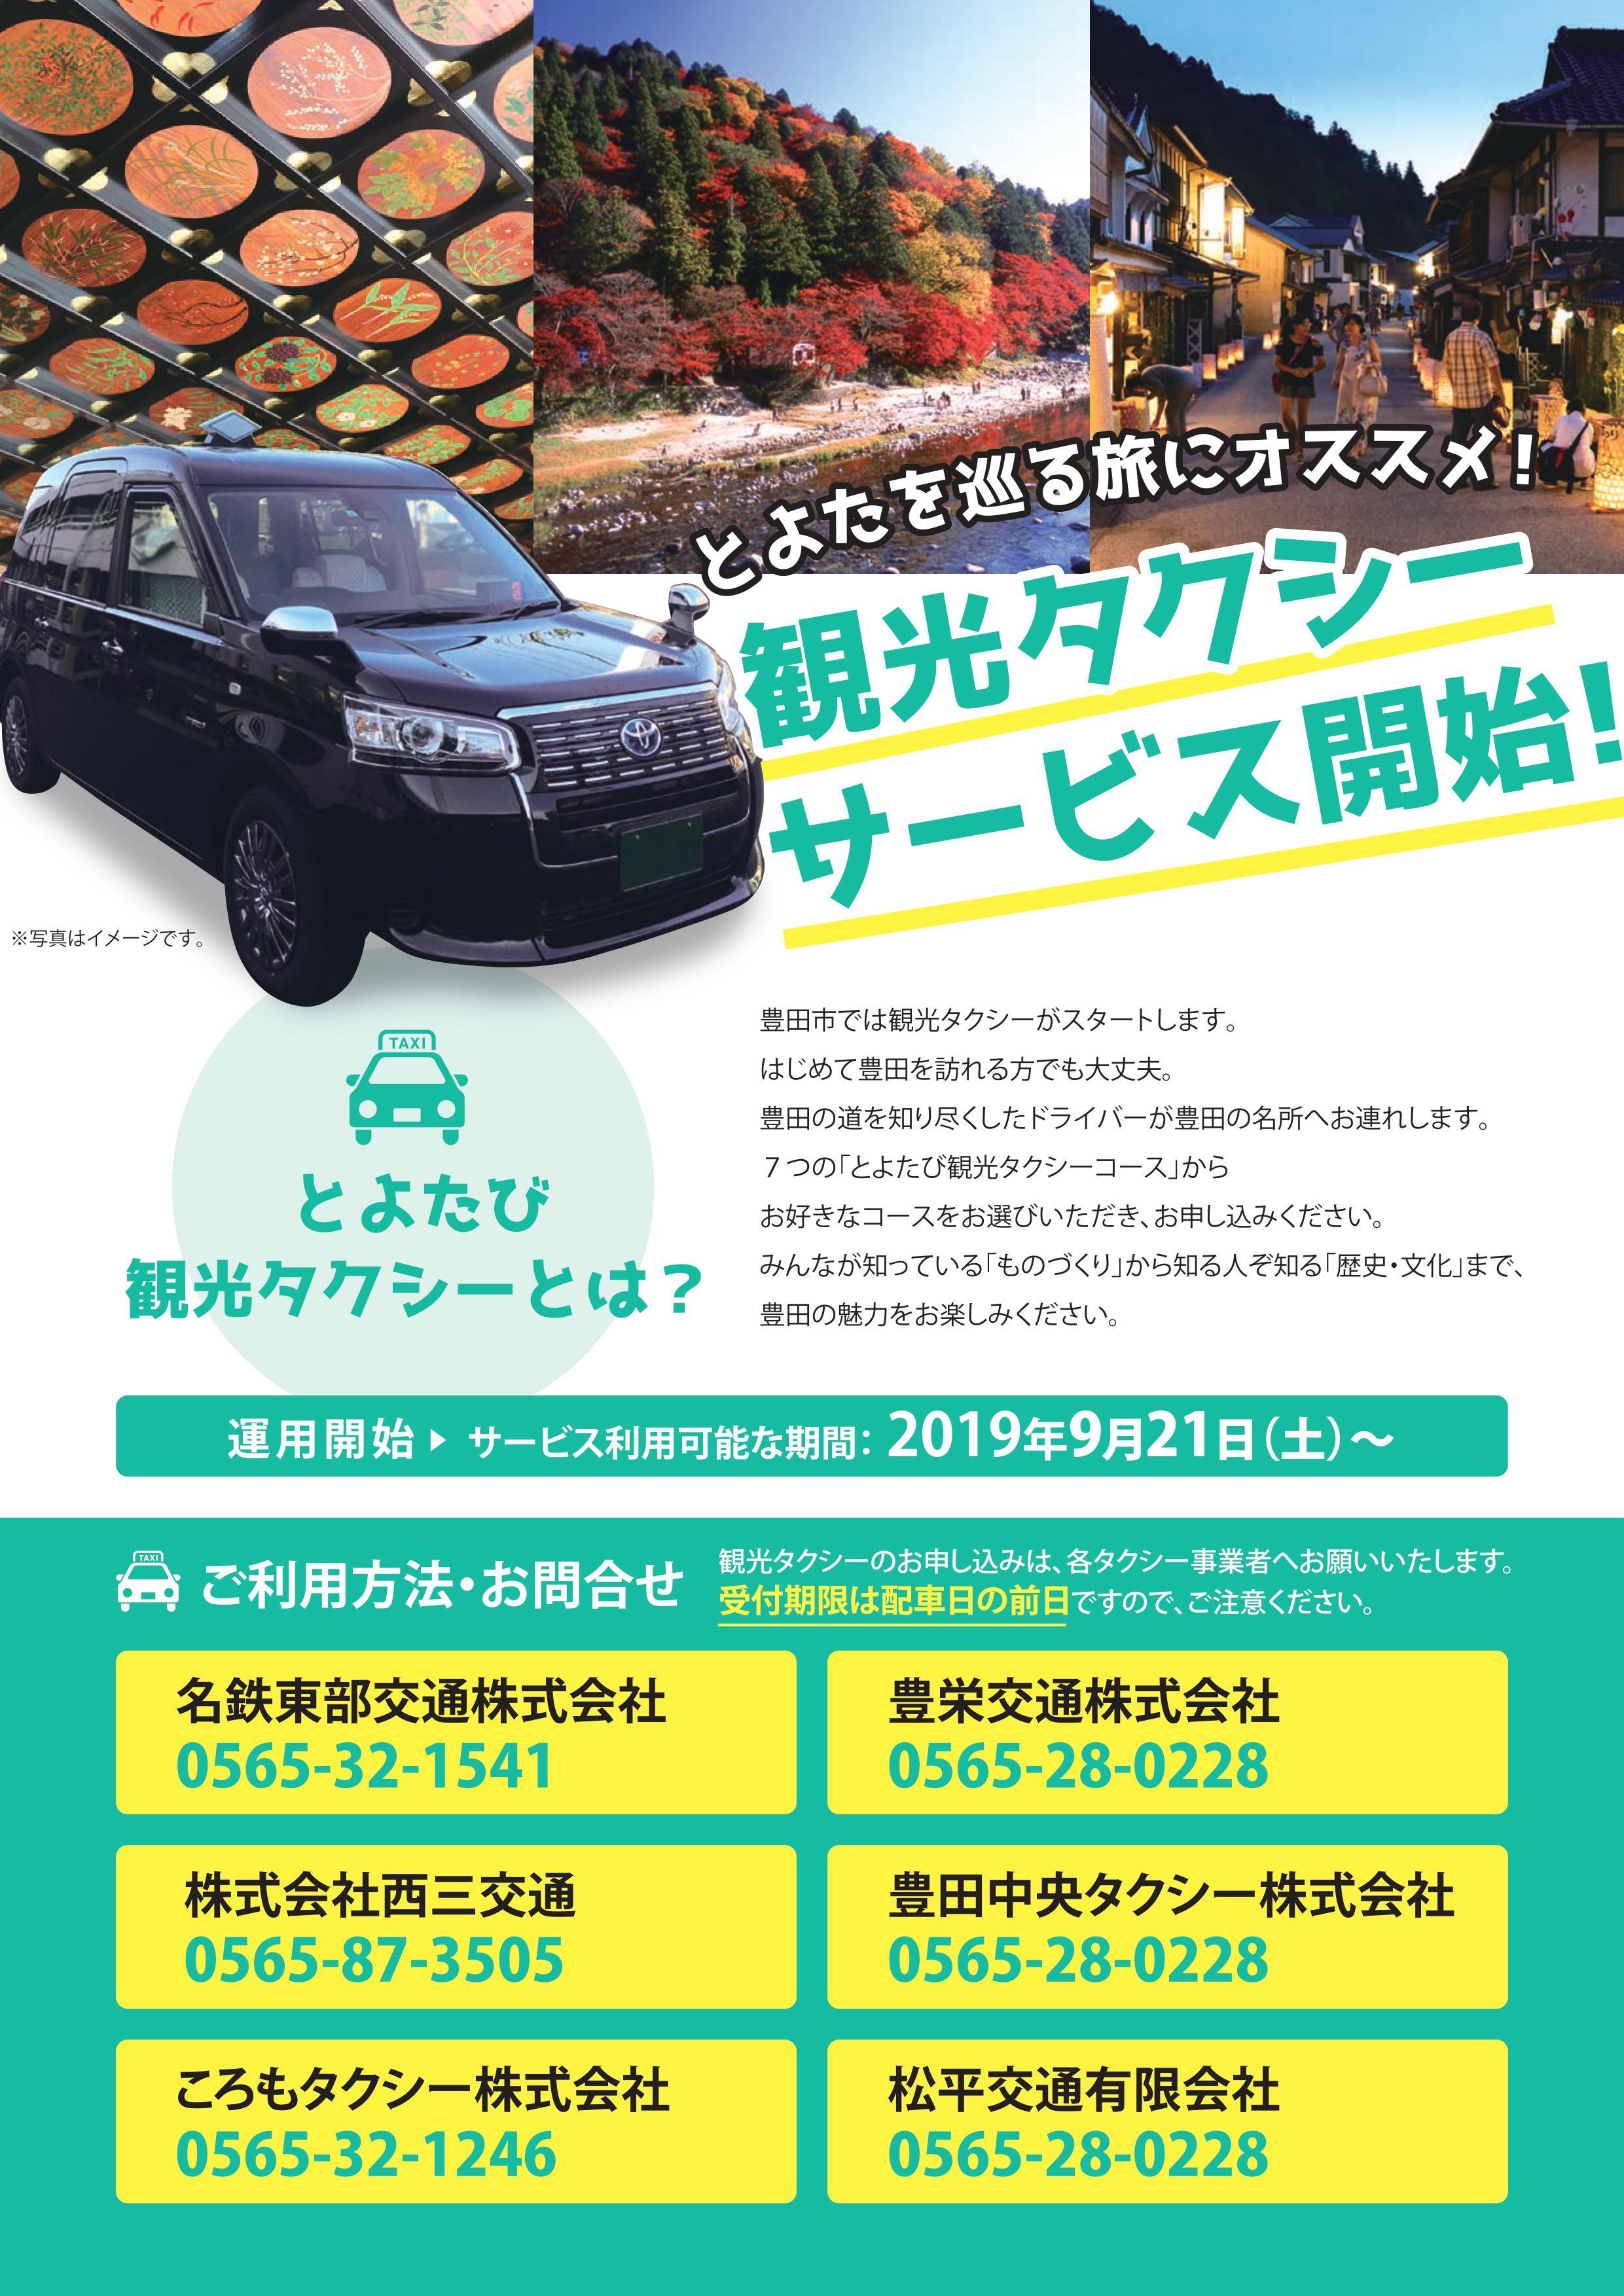 愛知県一広い豊田をらくらく観光 充実の7コースをご用意 とよたび観光タクシー が9月21日 土 から開始 一般社団法人ツーリズムとよたのプレスリリース